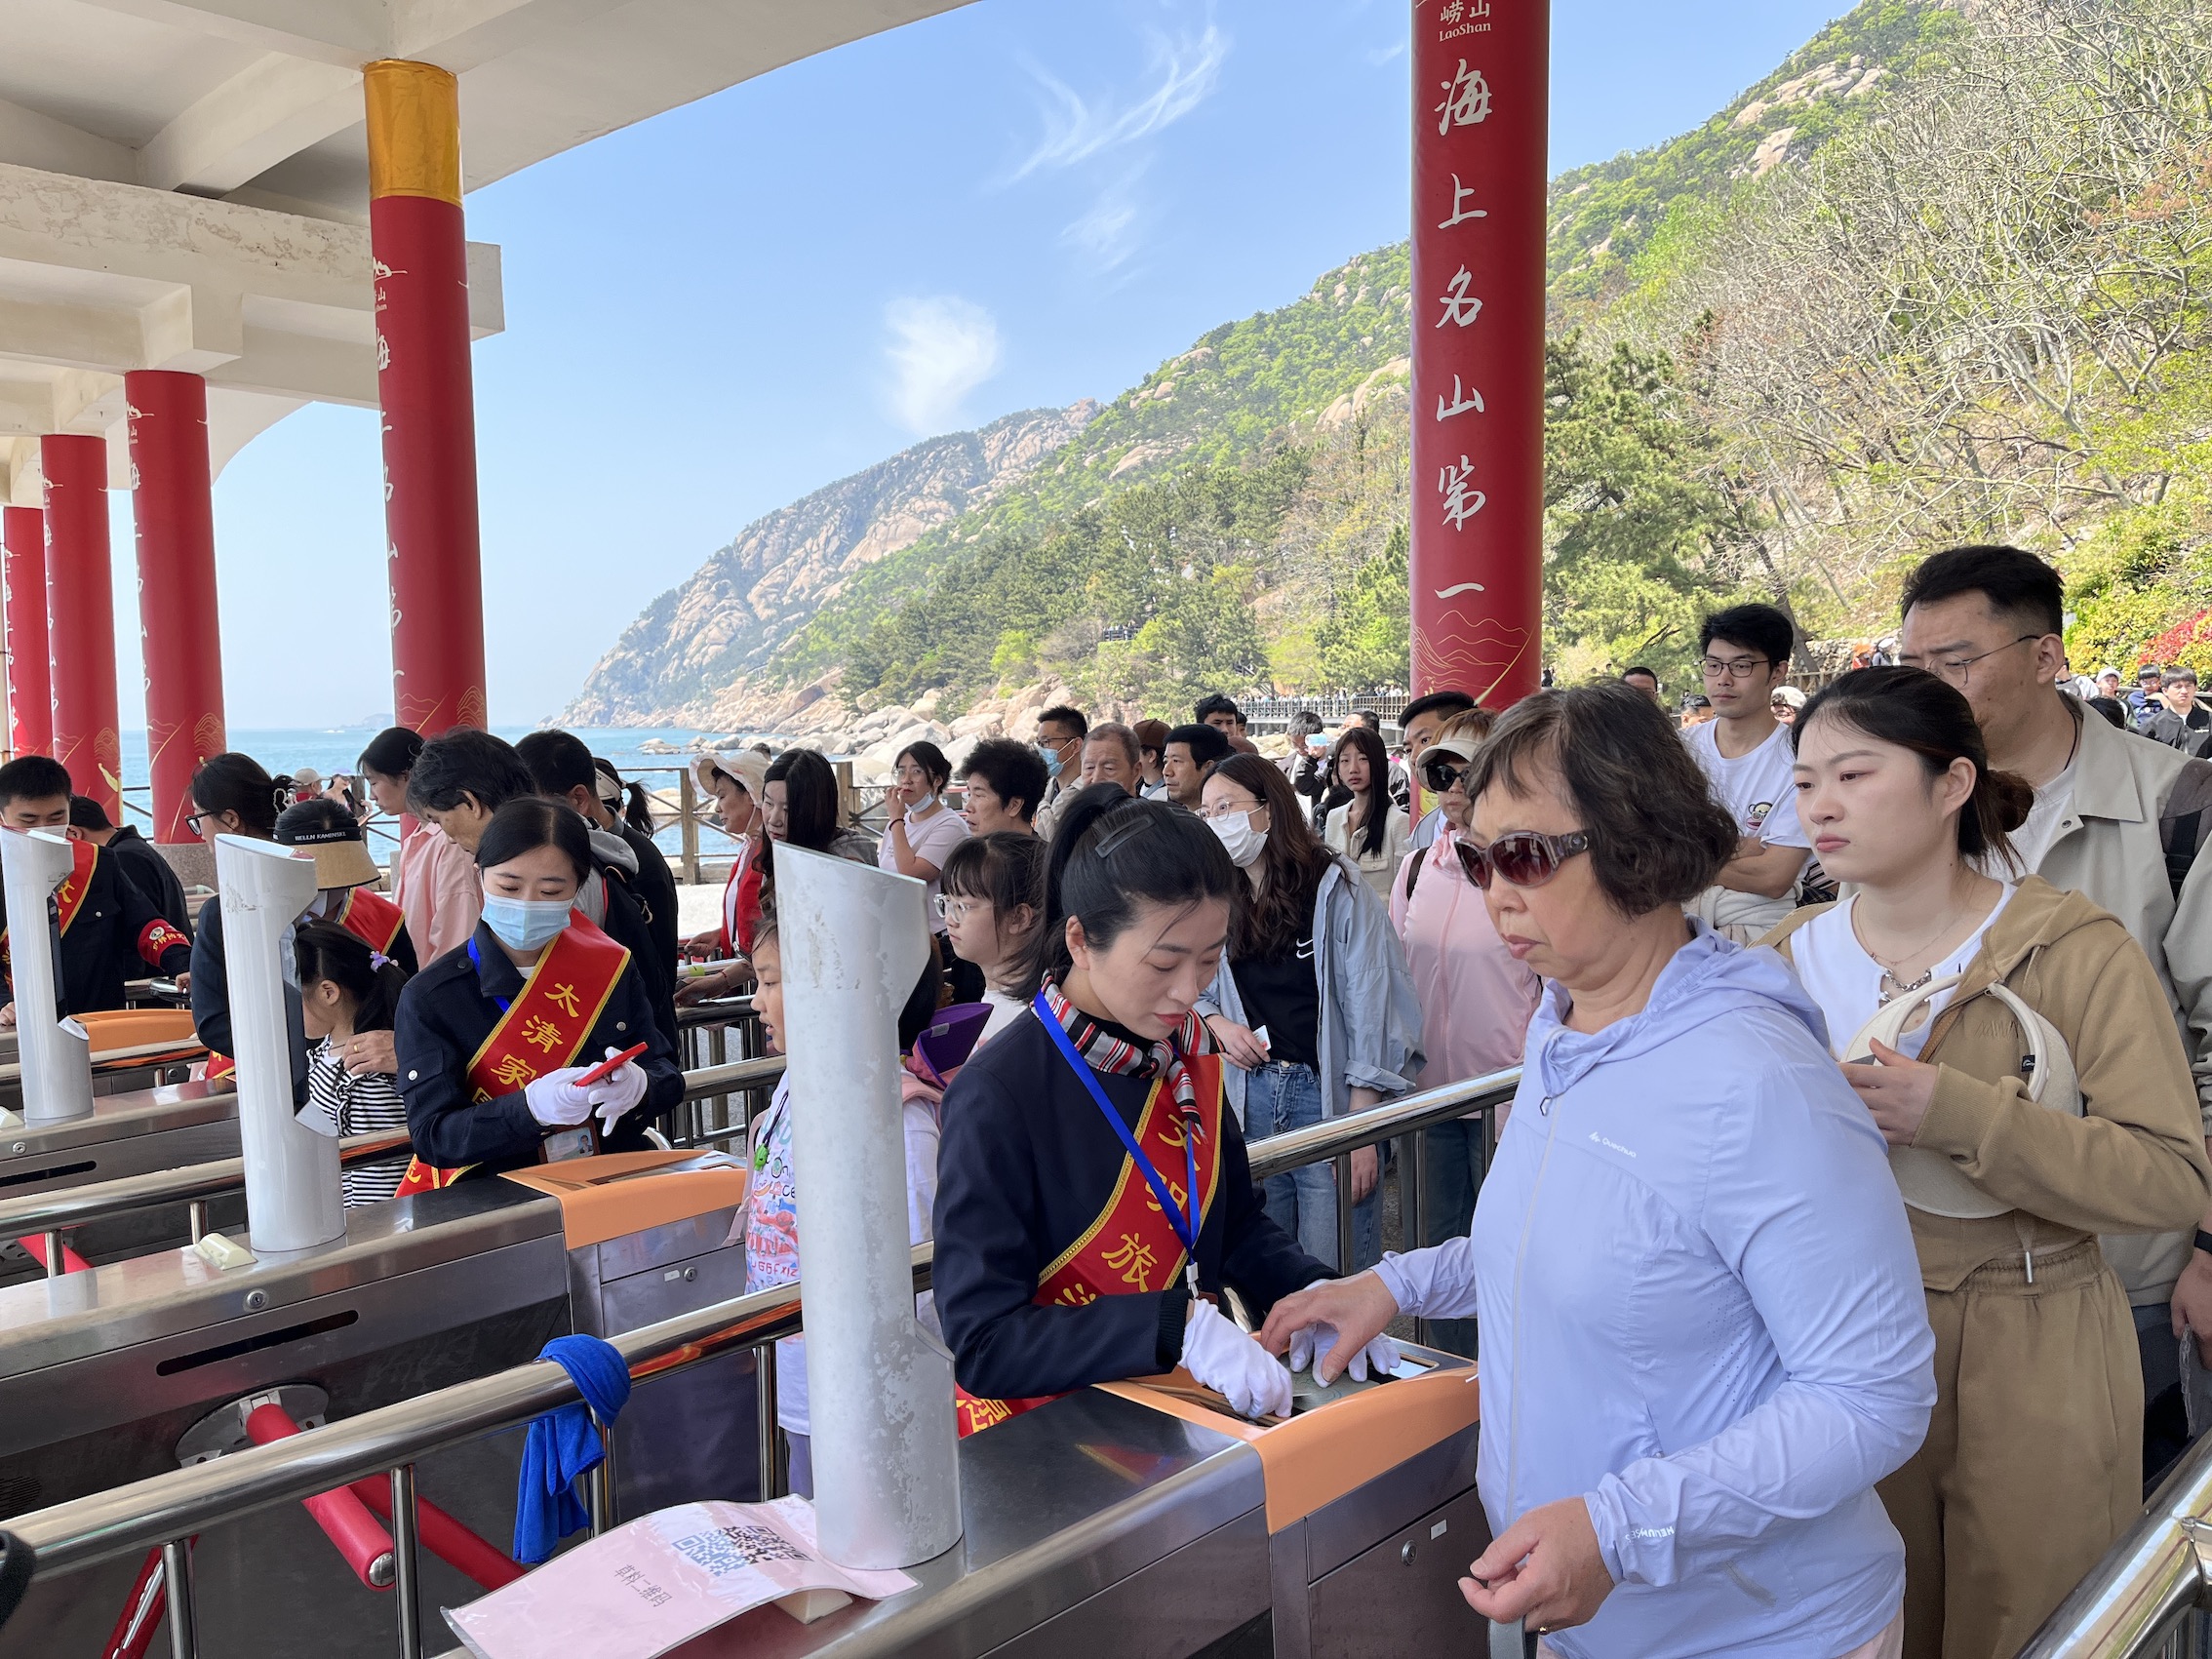 青島嶗山風景區五一假期首日迎客流高峰